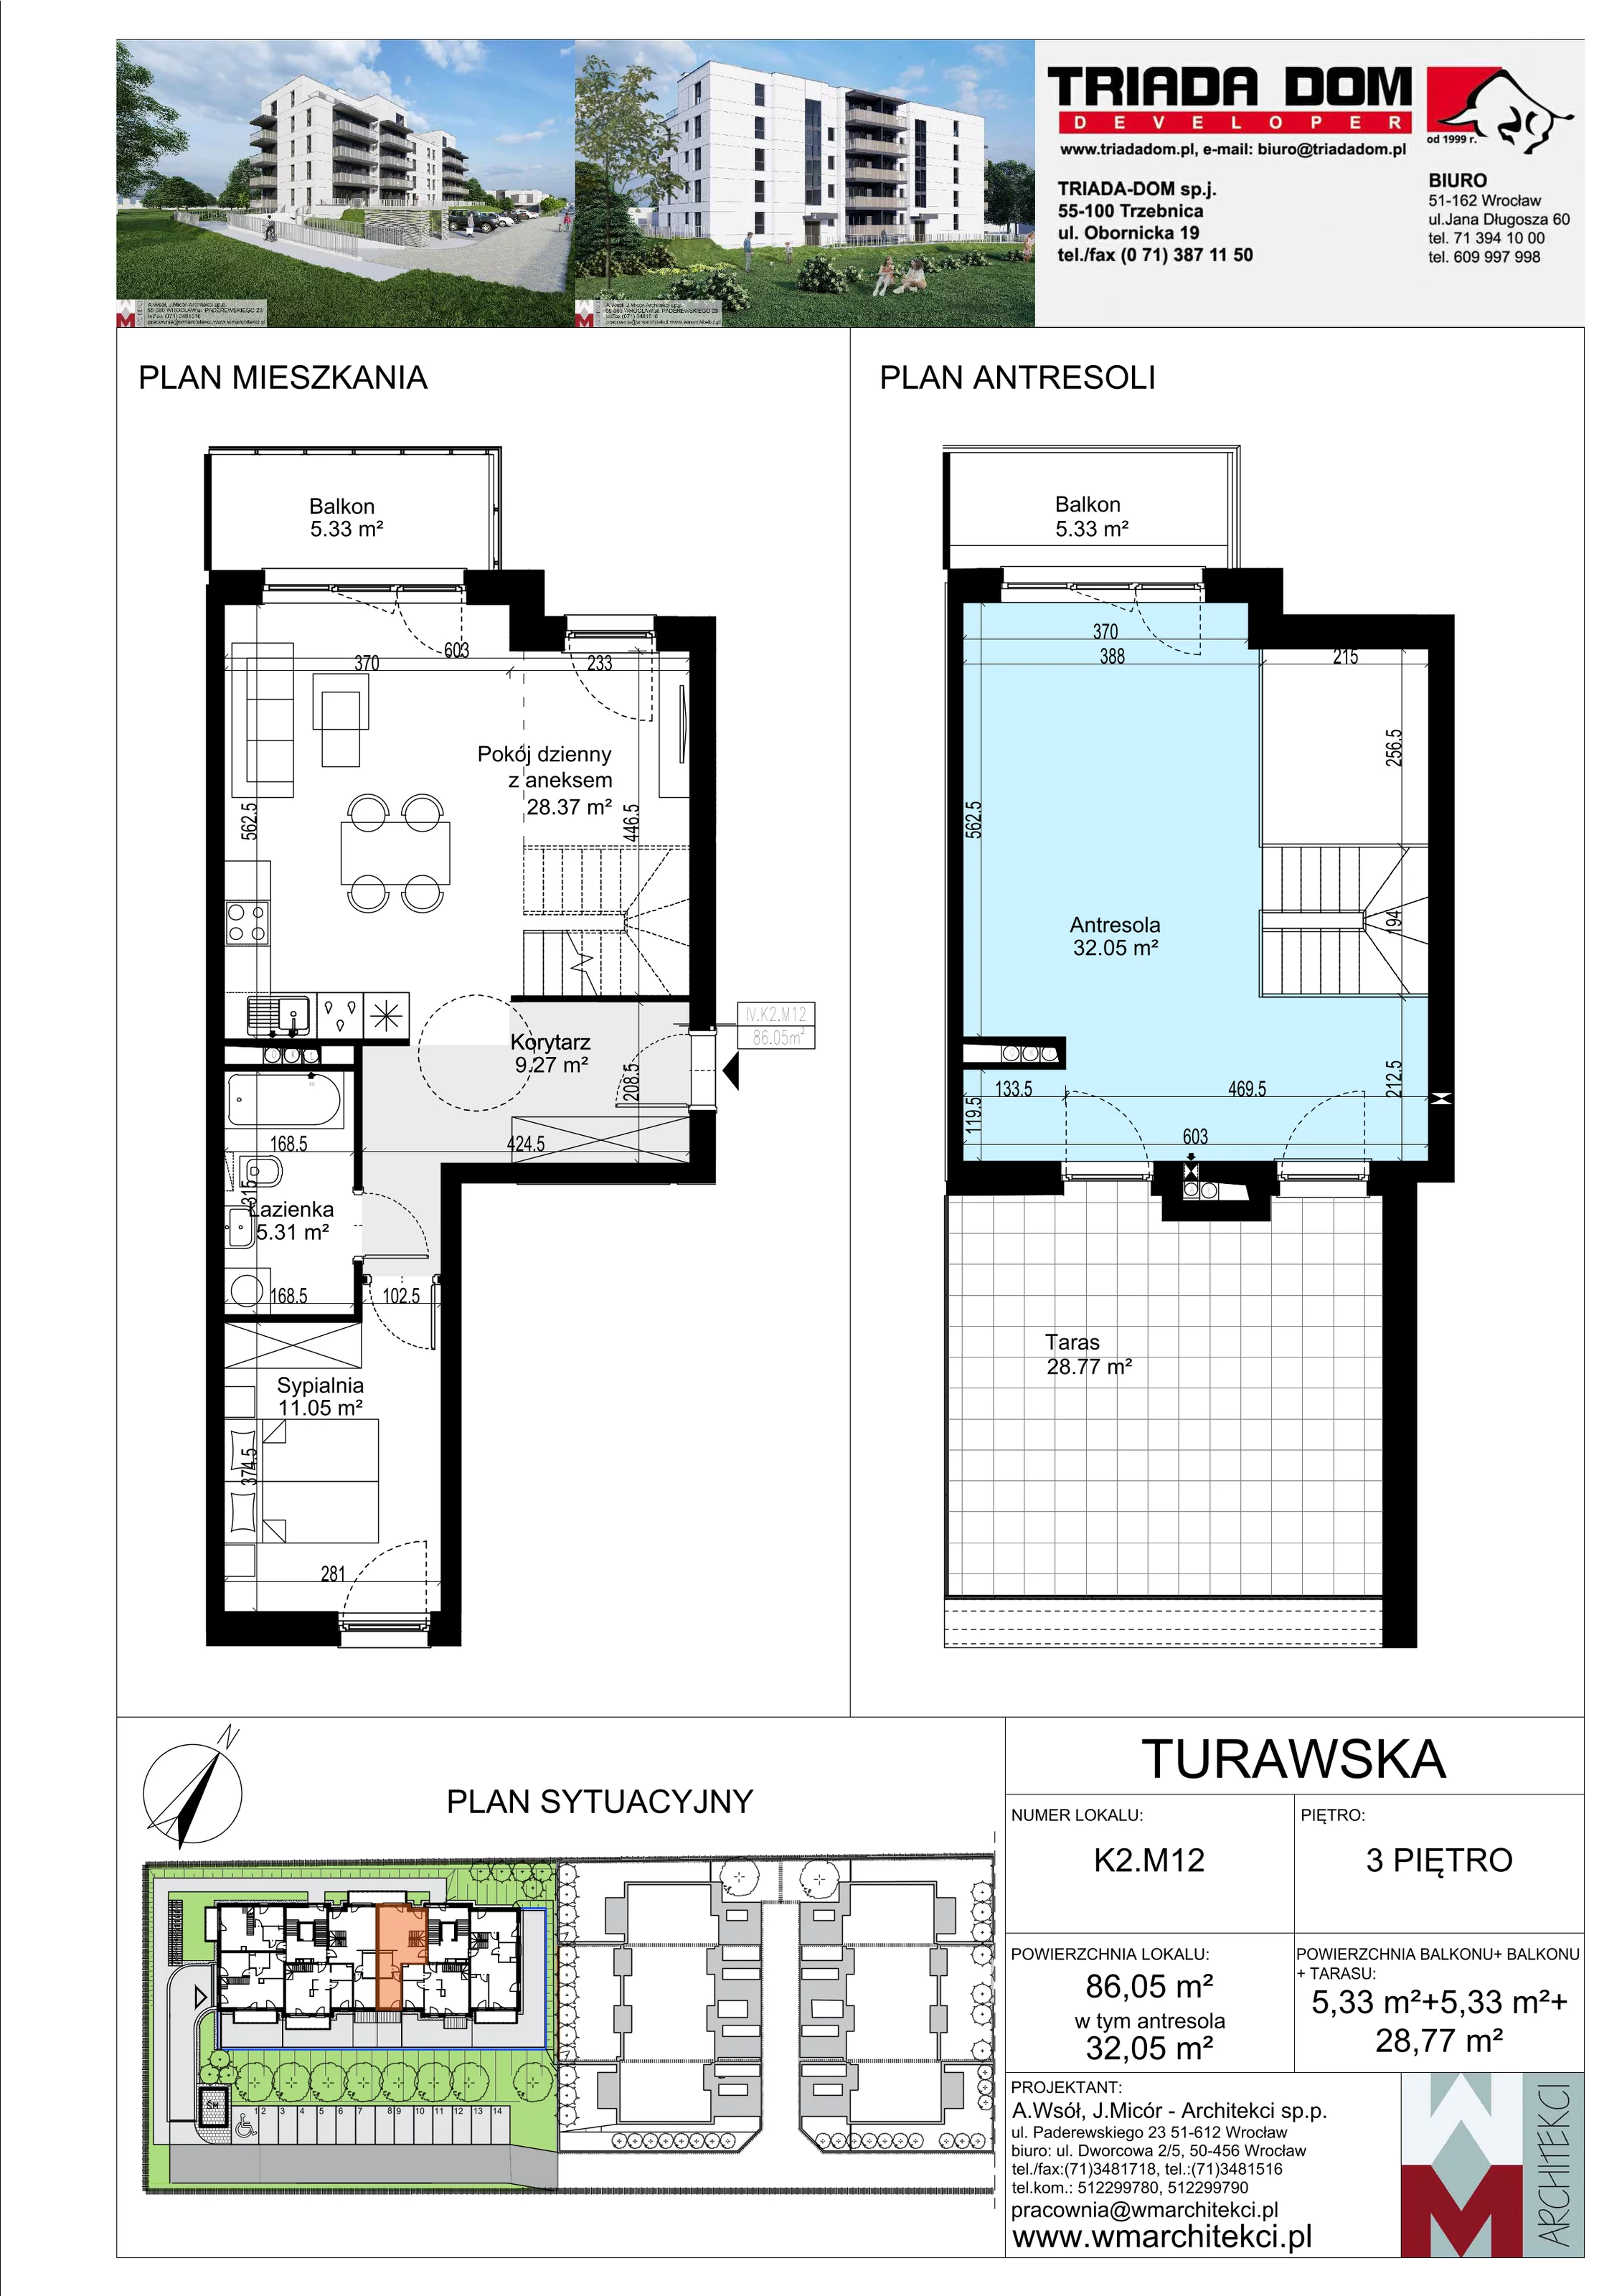 Mieszkanie 86,05 m², piętro 3, oferta nr K2.M12, Ogrody Turawska, Wrocław, Księże, Krzyki, ul. Turawska 78